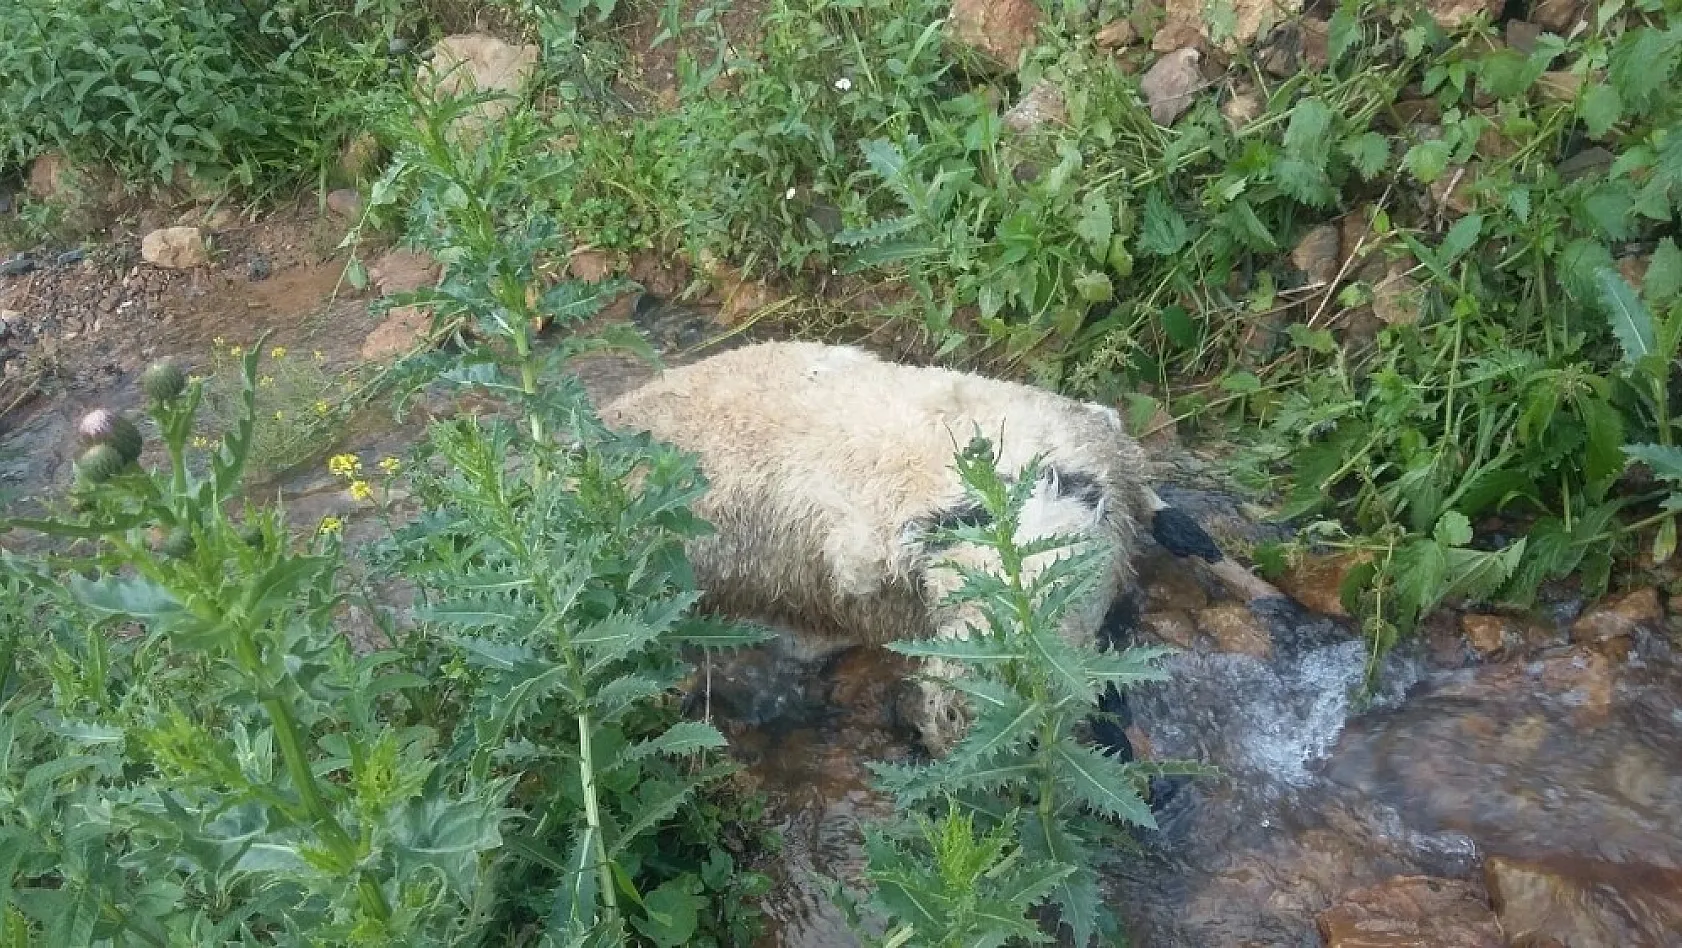 Sürüden ayrılan koyunlara kurtlar saldırdı, 40'ı telef oldu 